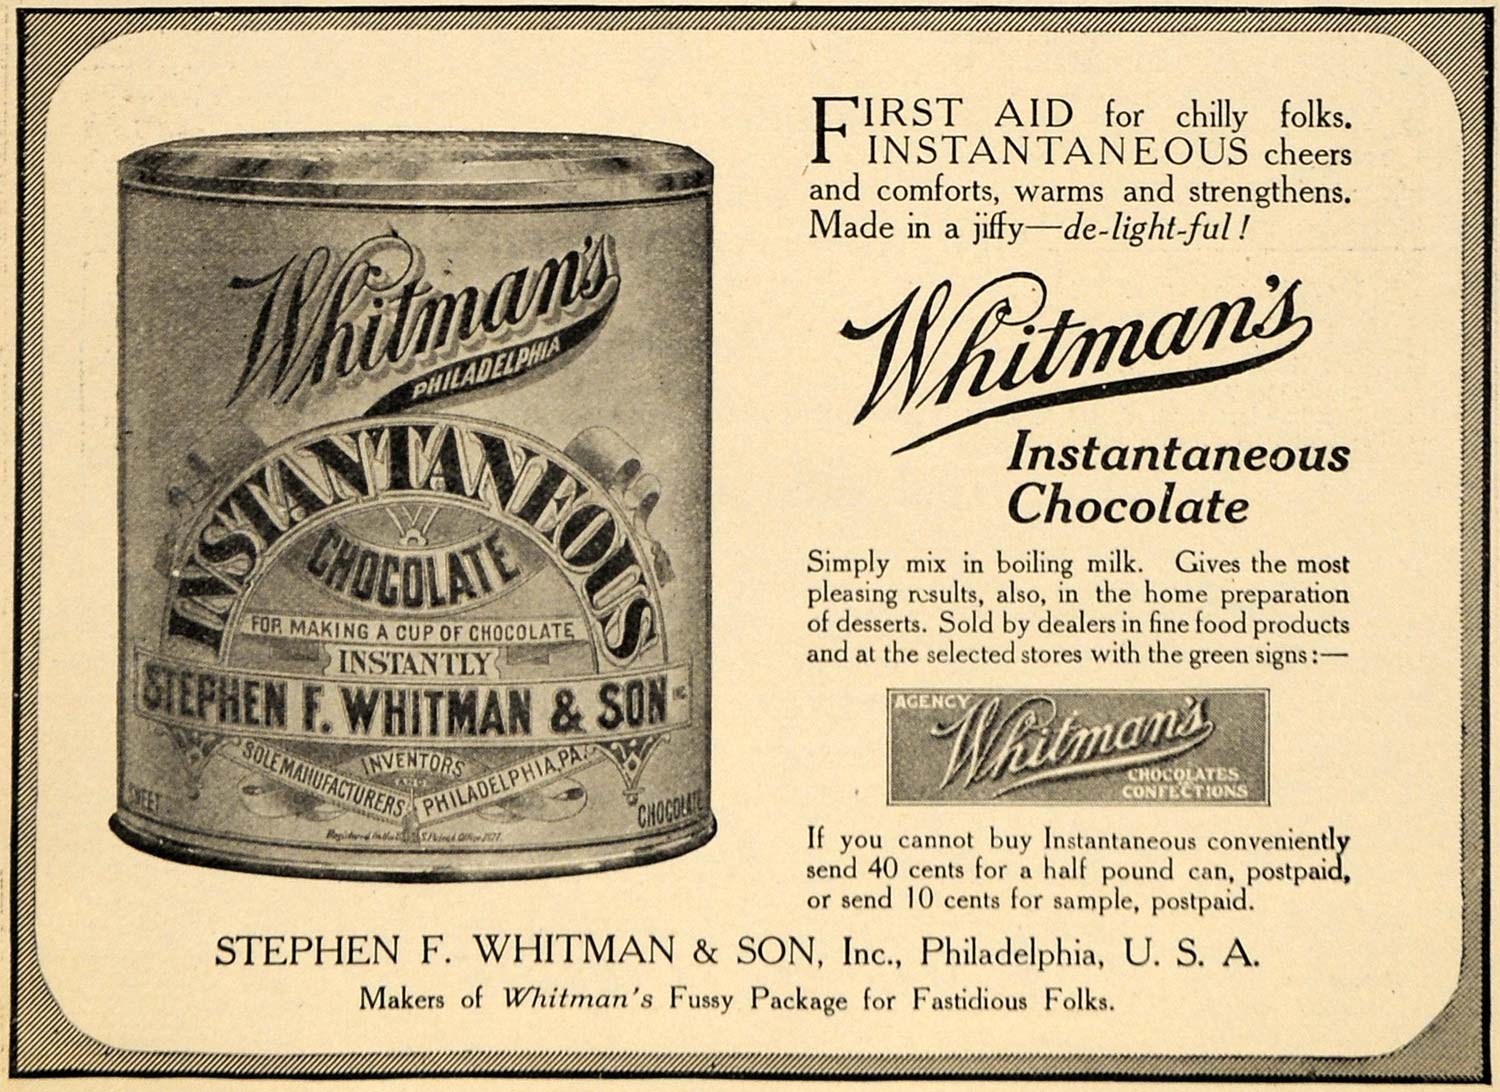 Whitman's Chocolate